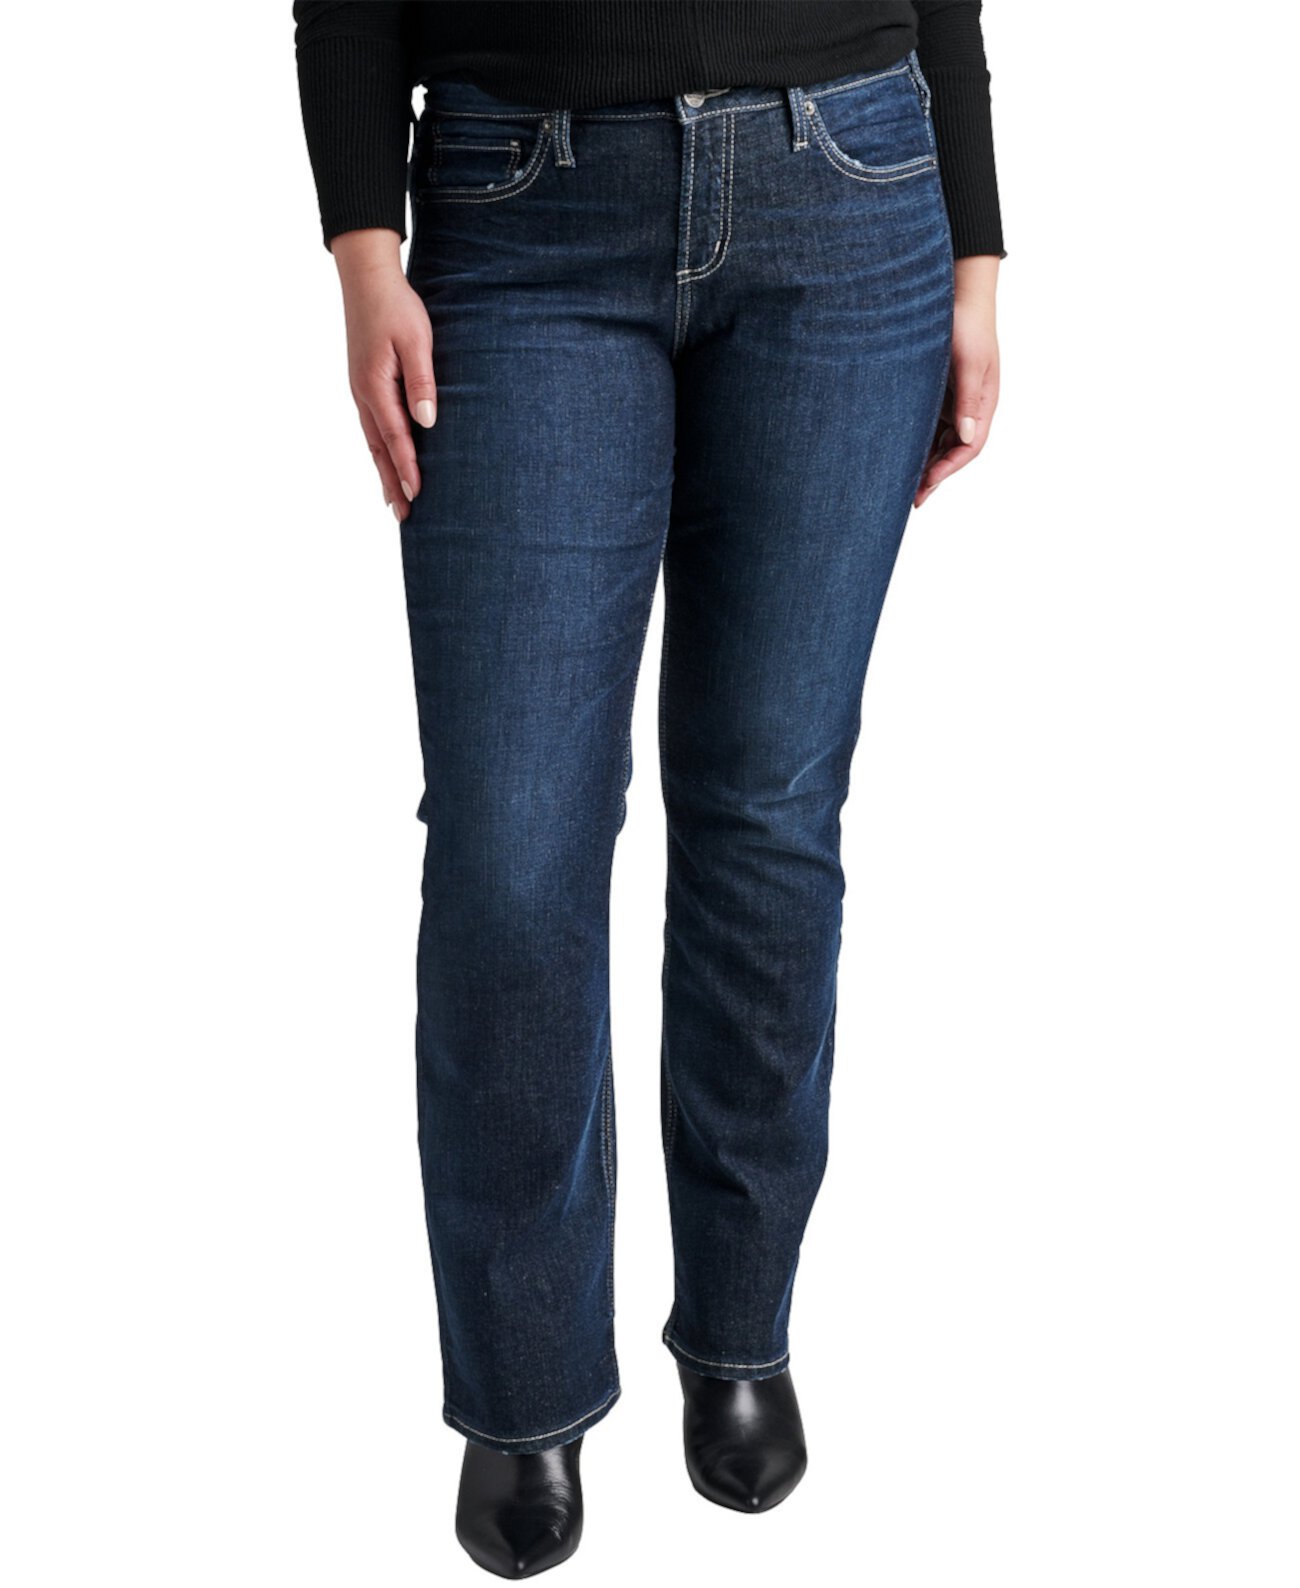 Джинсы со средней посадкой и пышными формами больших размеров Silver Jeans Co.